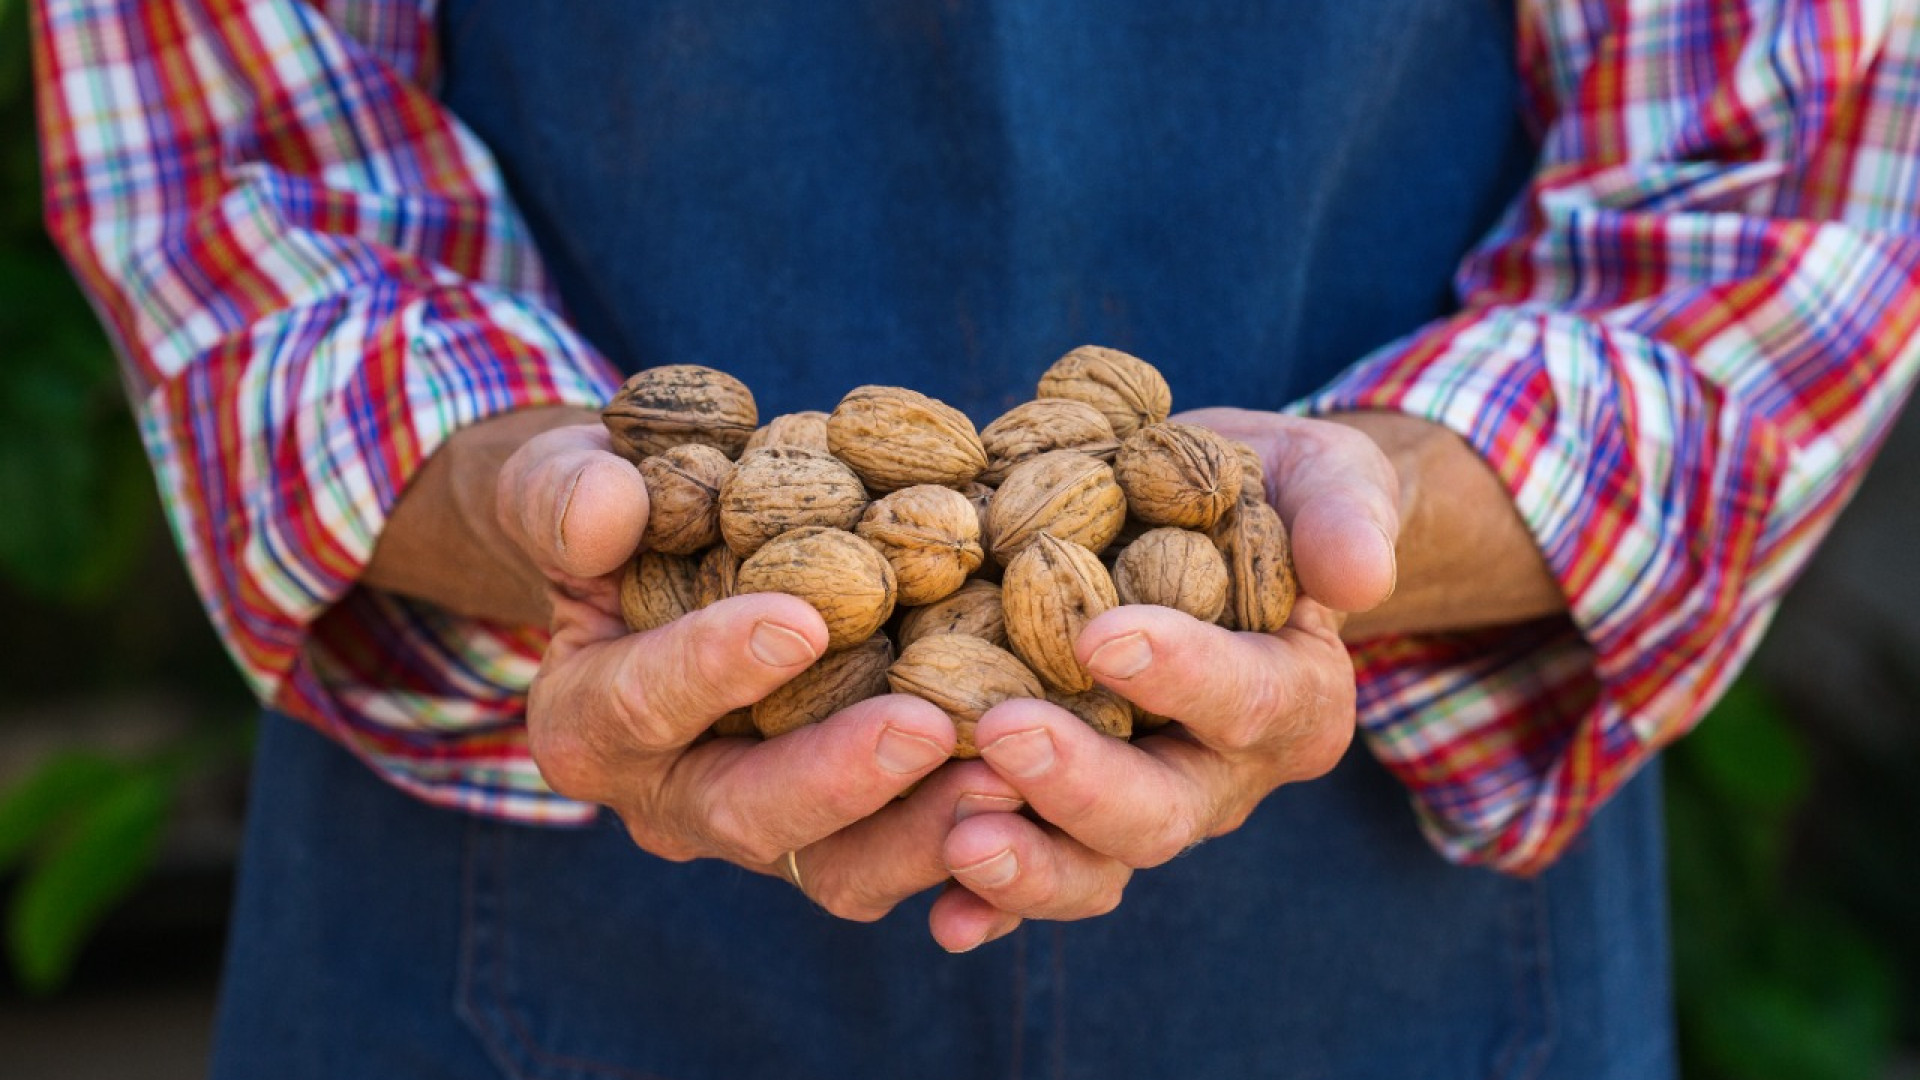 Врач перечислил самые полезные орехи для мужчин: 08 октября 2022, 12:44 - новости на Tengrinews.kz